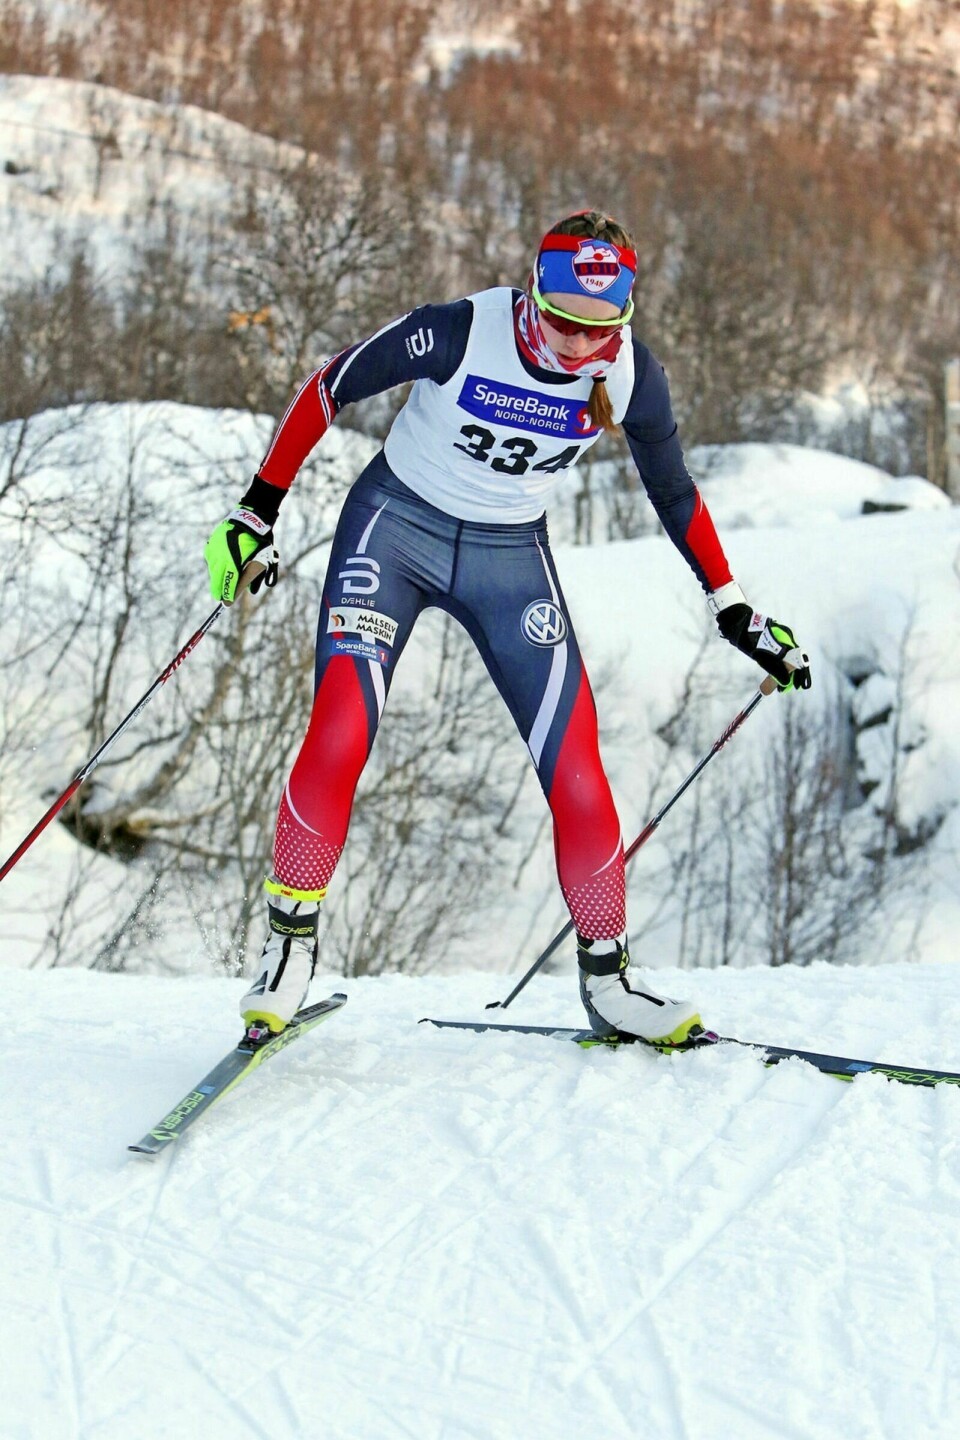 GULL I KM: Vilje Marie Gulbrandsen fra BOIF vant et klart gull i 19–20-årsklassen under KM på ski i Tromsø lørdag. Søndag vant hun et kretsrenn samme sted. Foto: Ivar Løvland (arkiv)